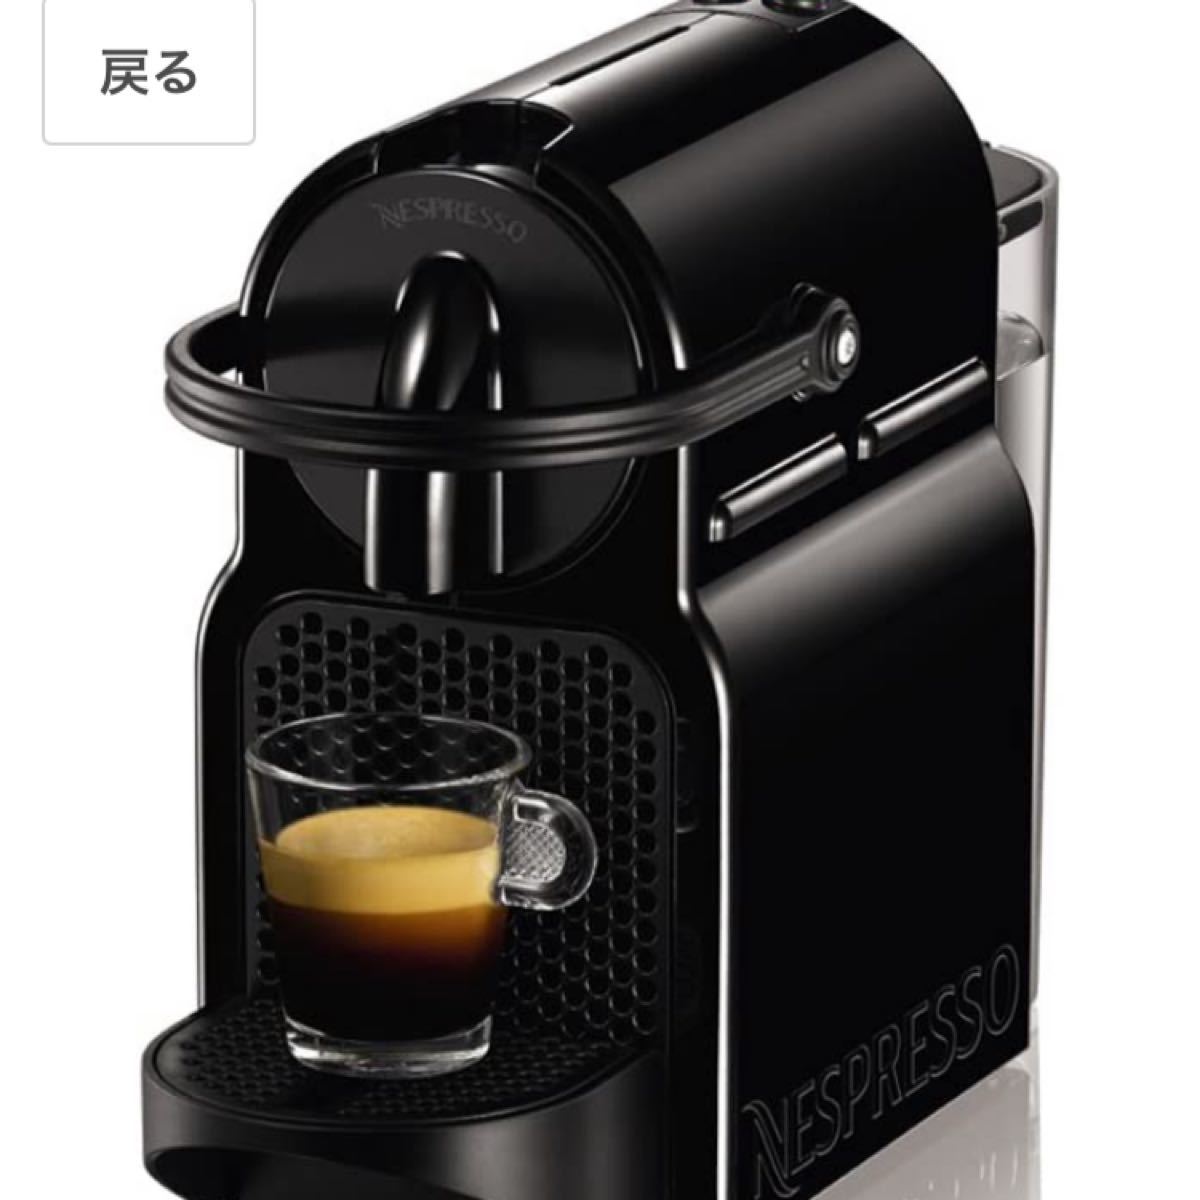 ネスプレッソ コーヒーメーカー イニッシア ブラック D40BK